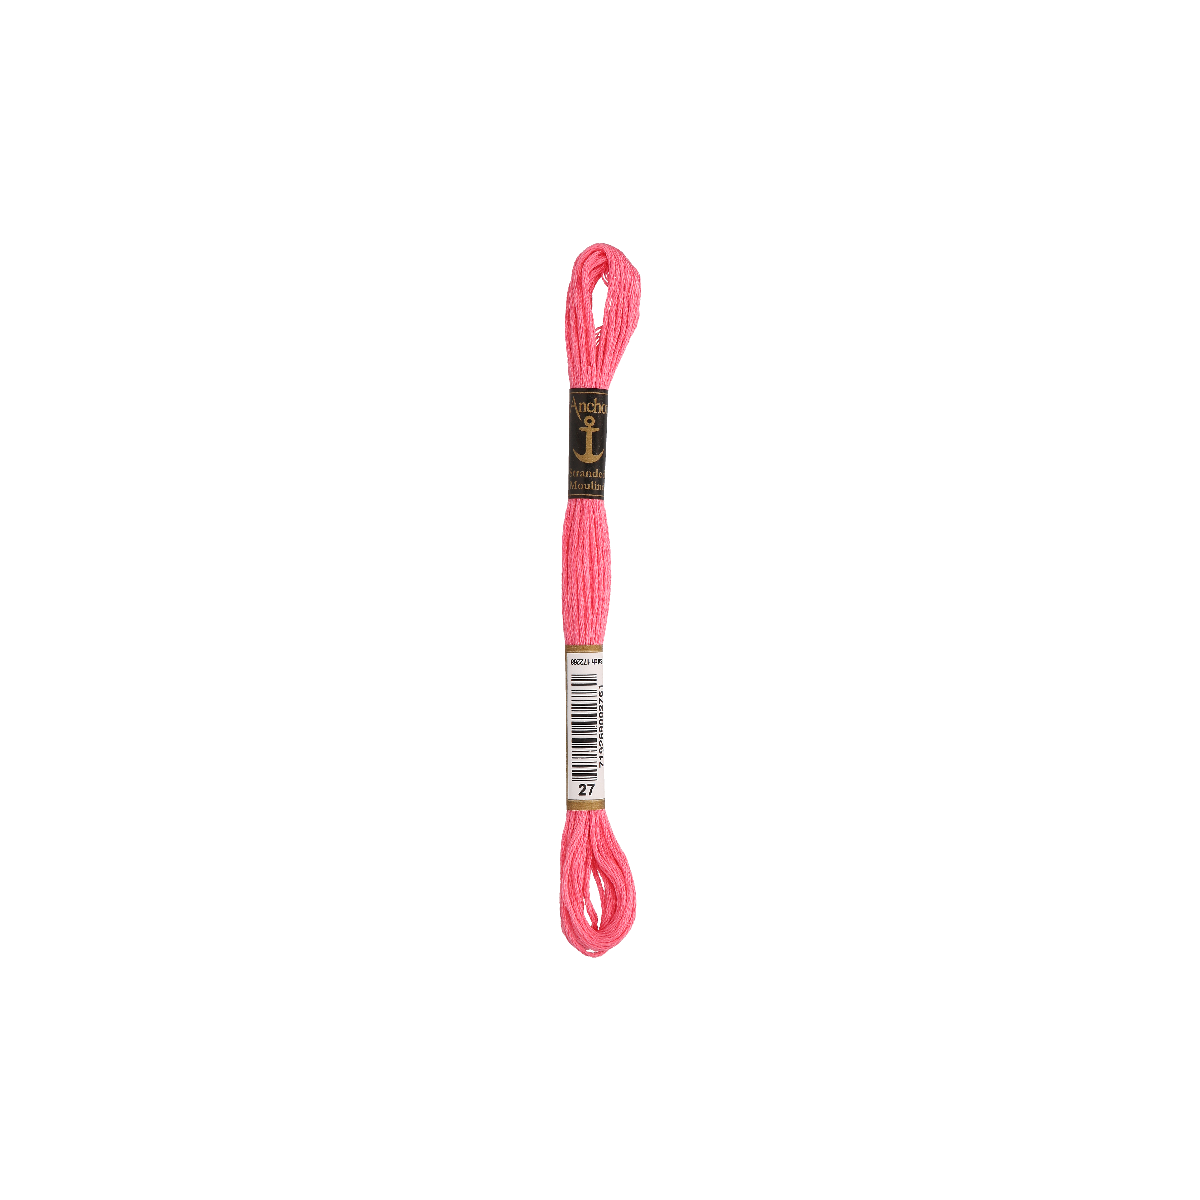 Anchor мулине 8m, розовый, Хлопок,  цвет 27, 6-ниточный